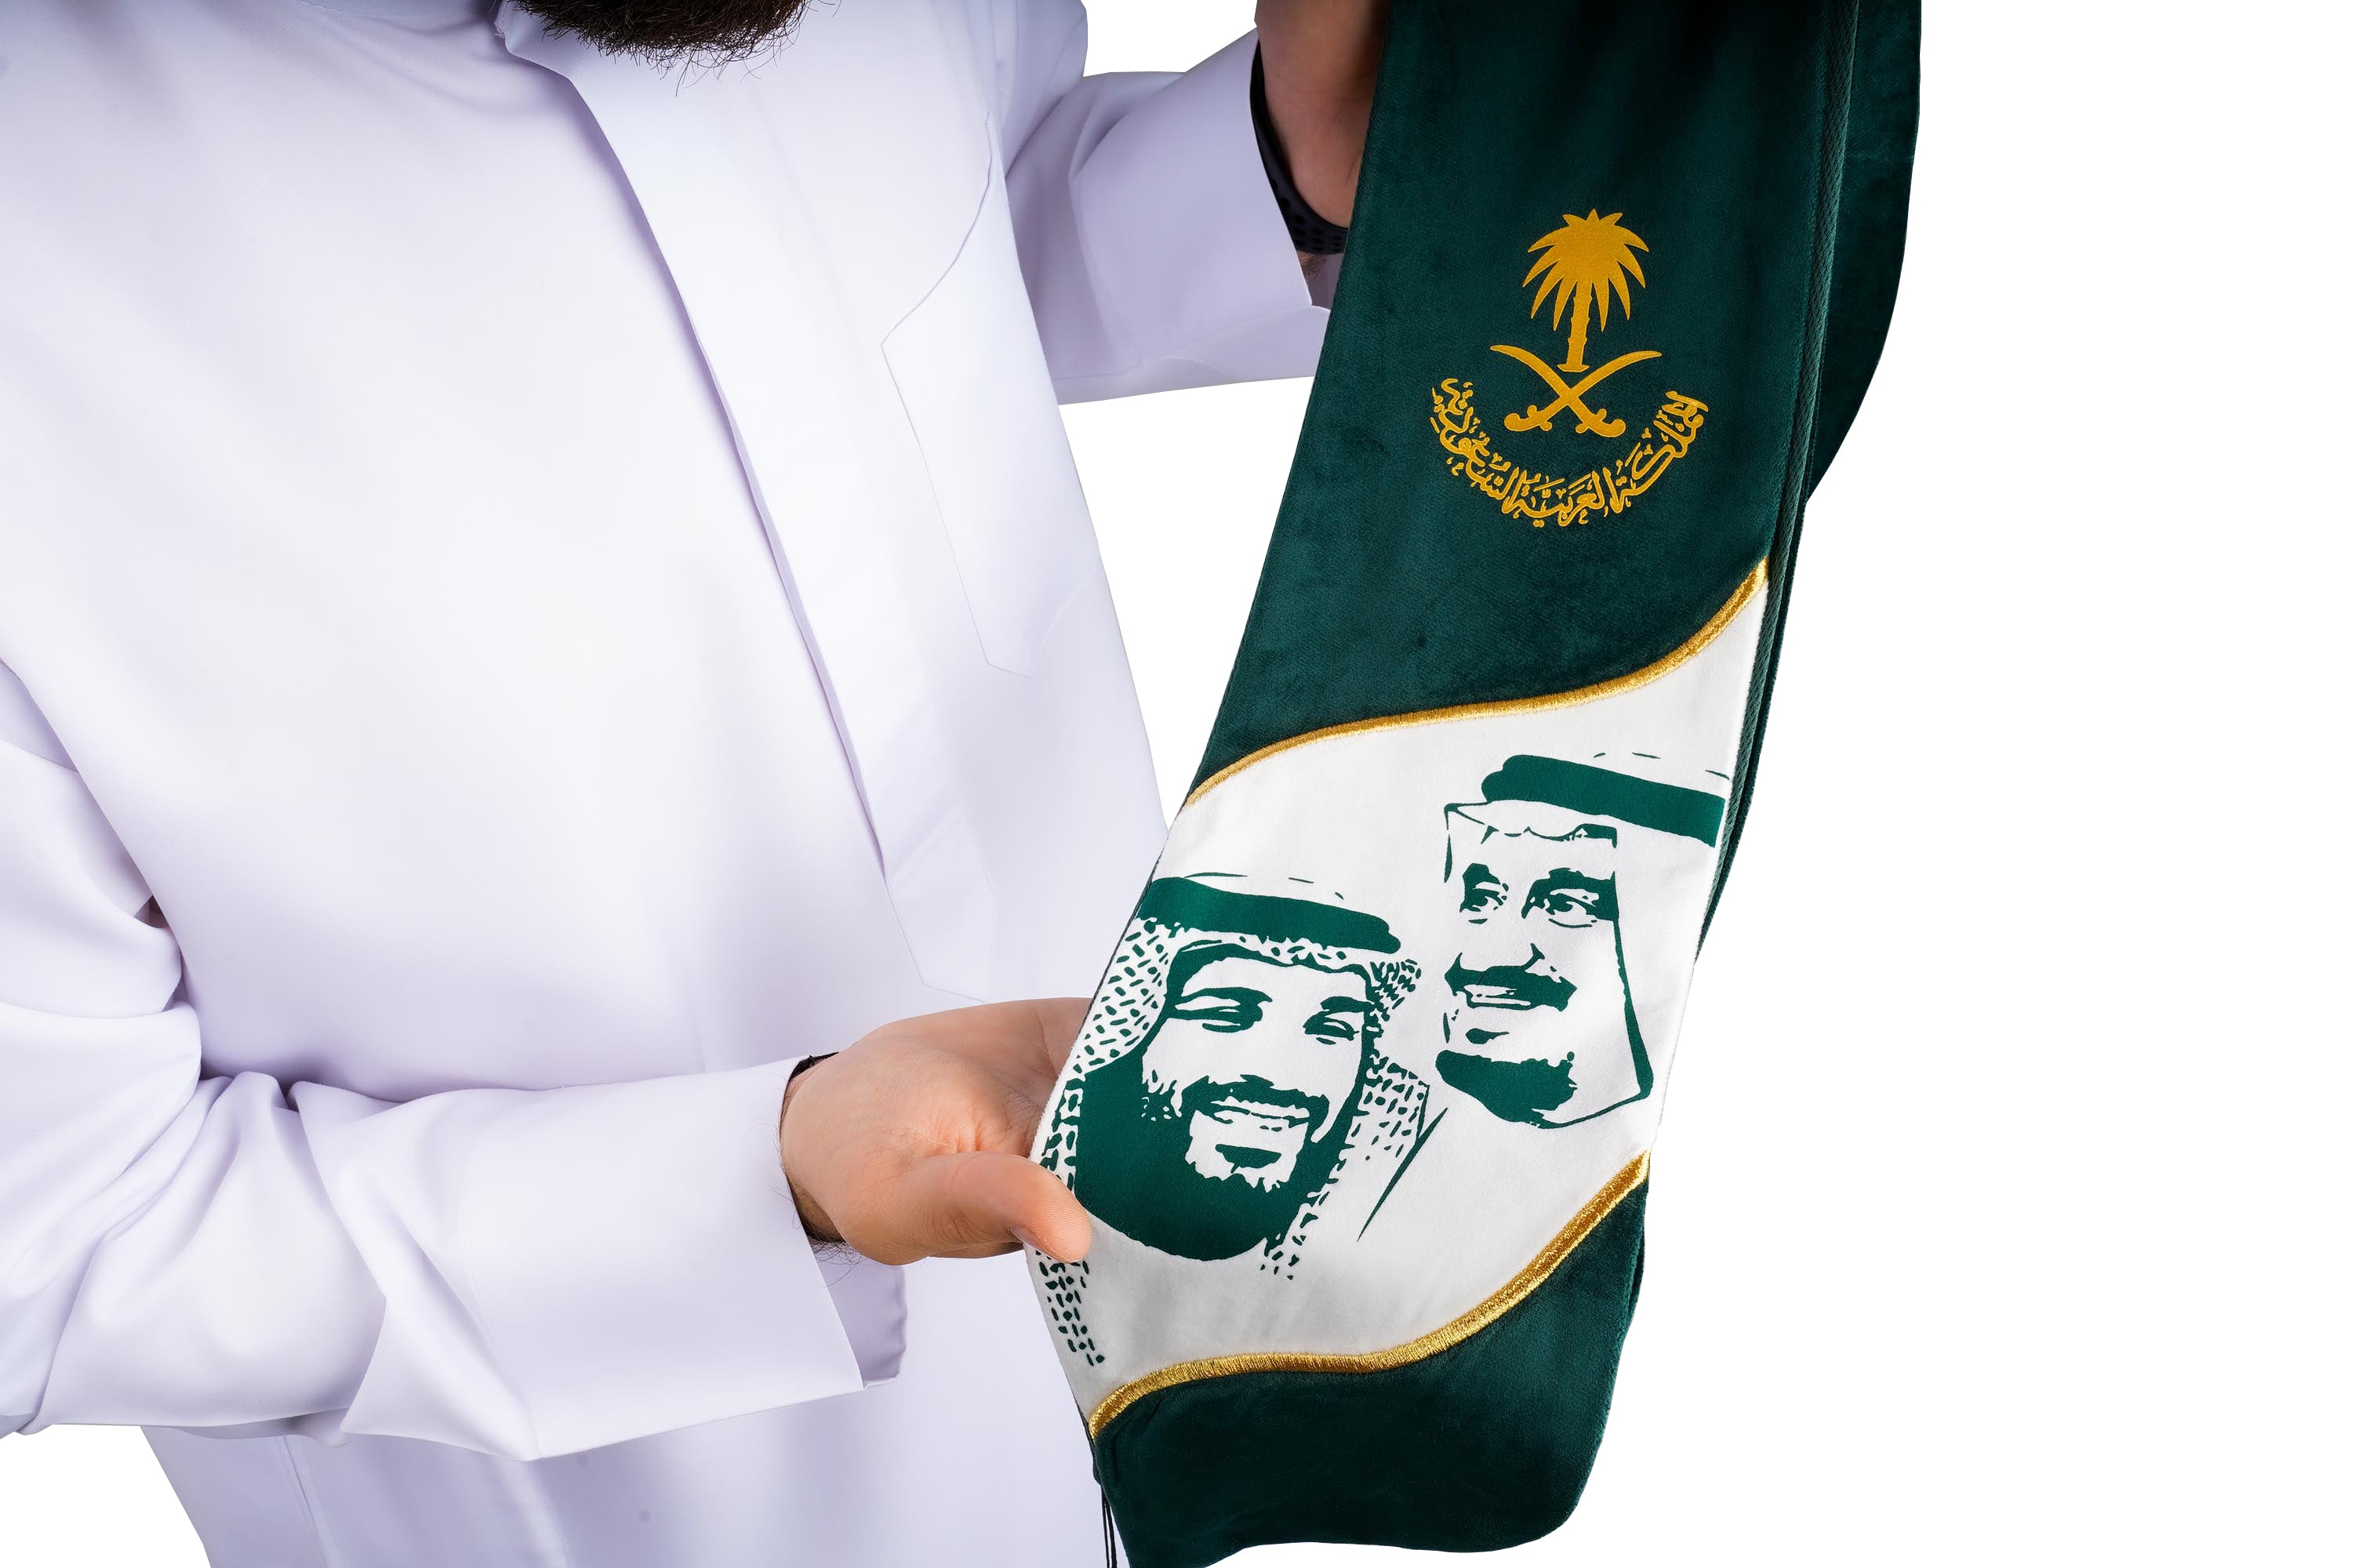 روفاتي وشاح المملكة العربية السعودية منحني أخضر وأبيض